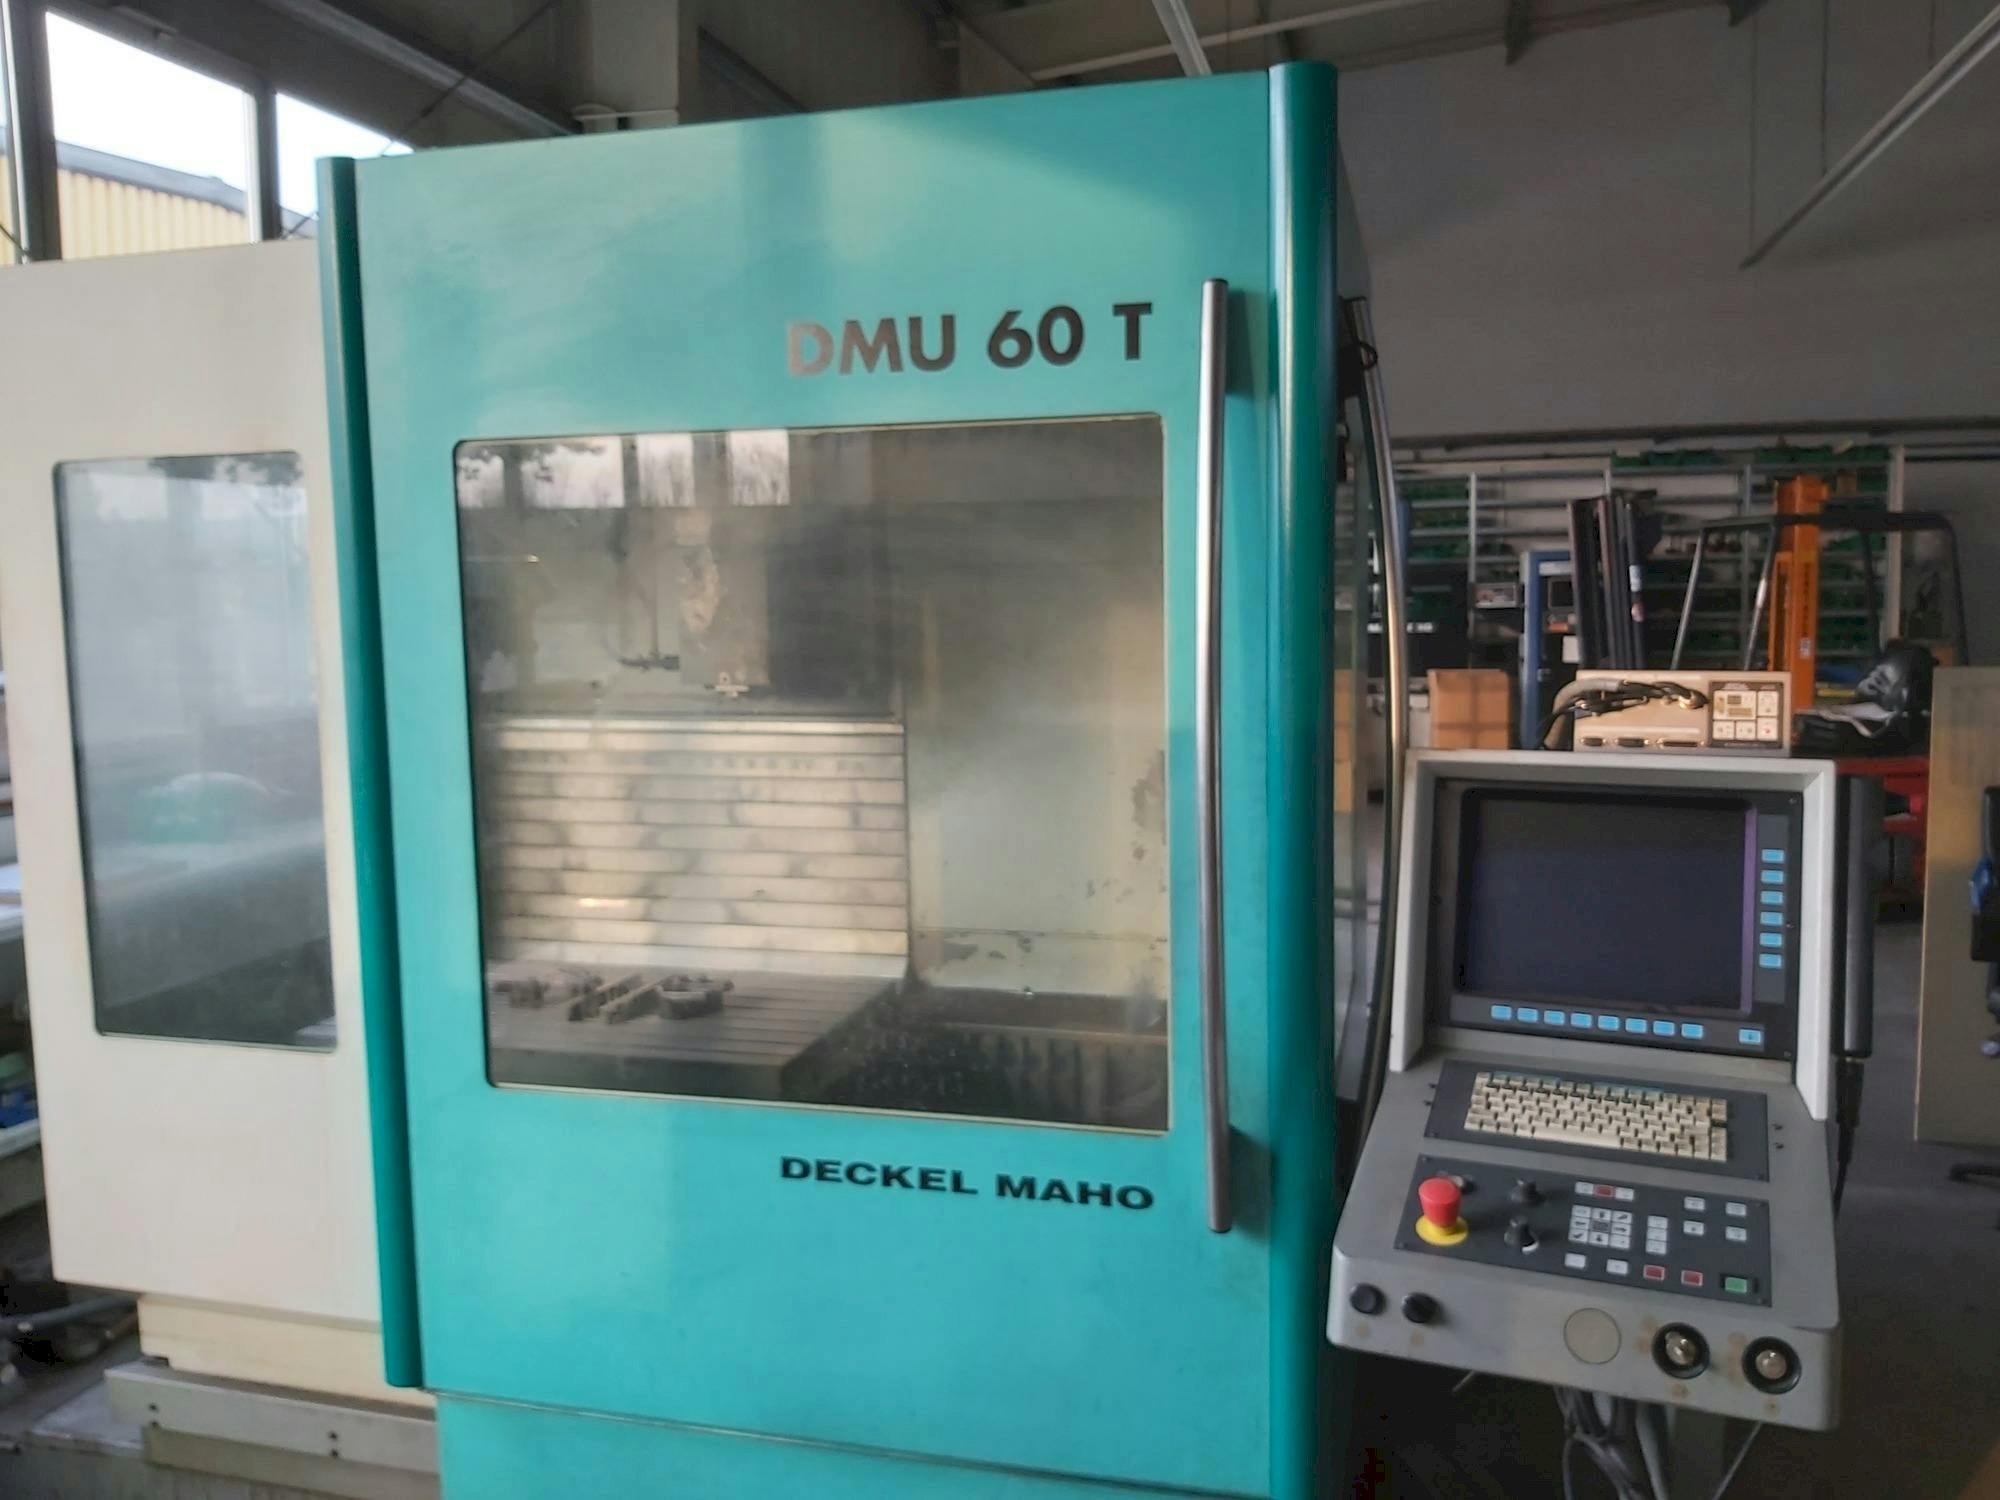 Frontansicht der DECKEL MAHO DMU 60 T  Maschine